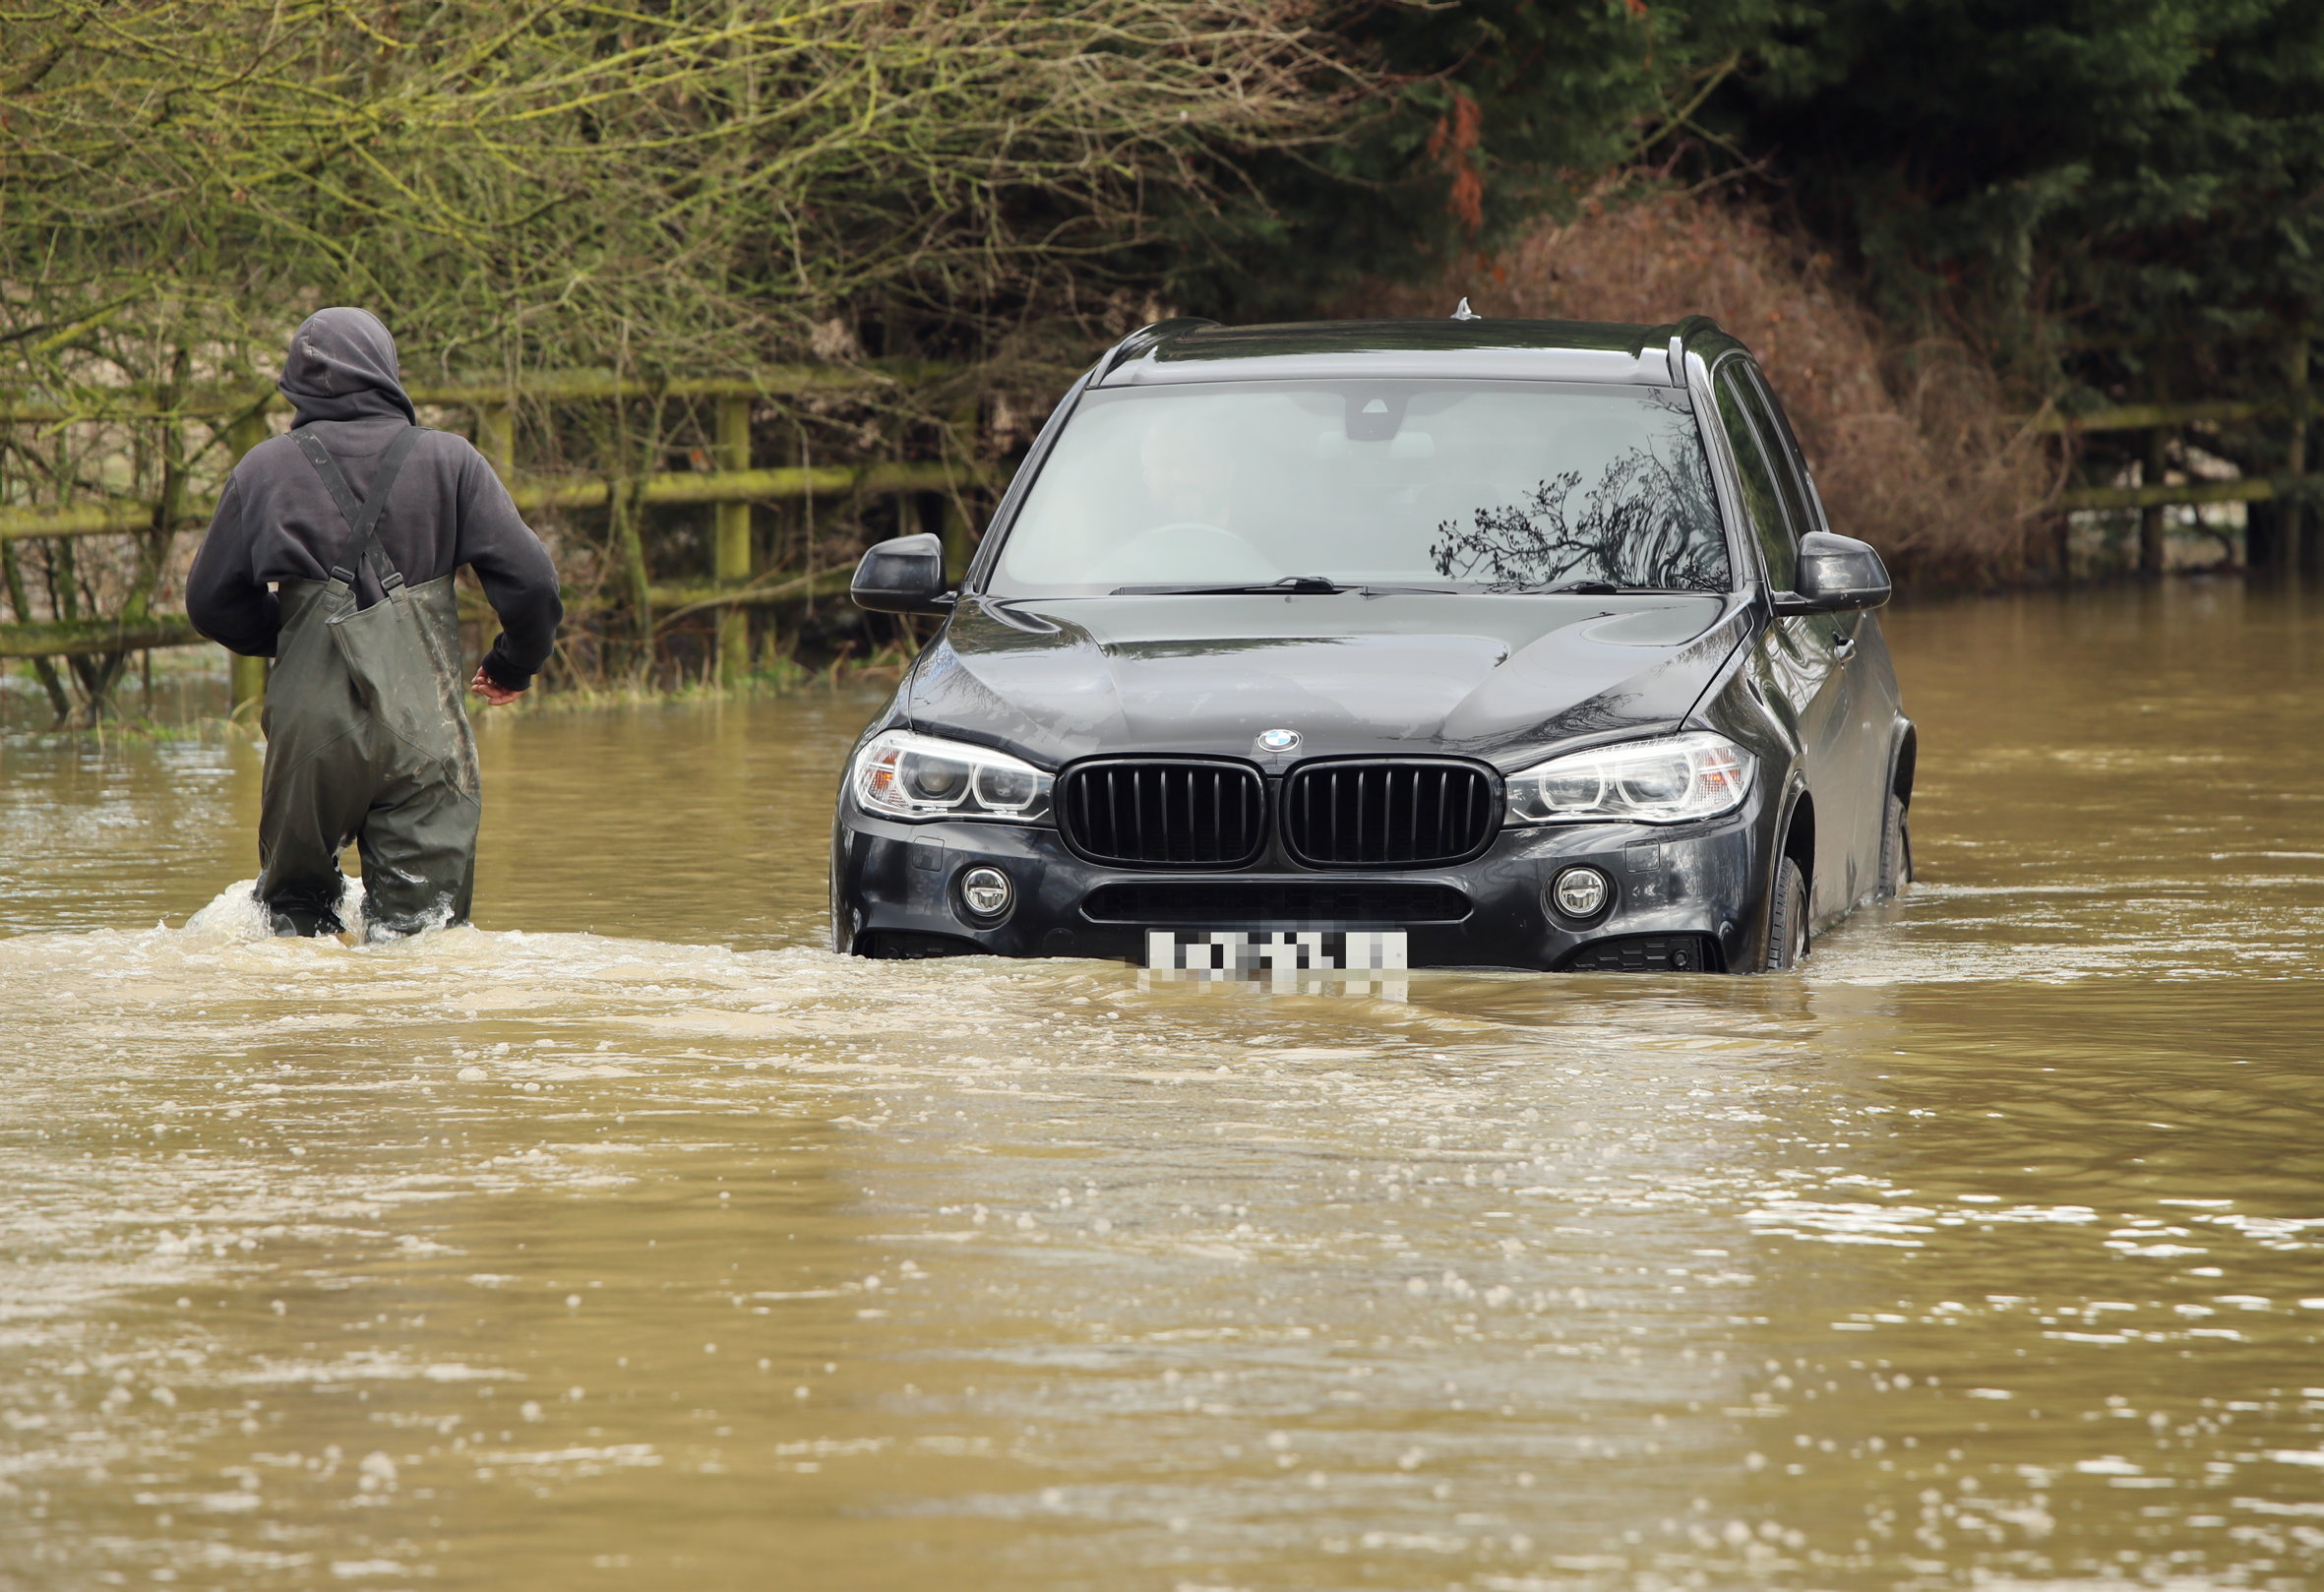 Une BMW X3 est restée bloquée lorsqu'elle s'est retrouvée coincée dans les eaux de crue près de Chelmsford